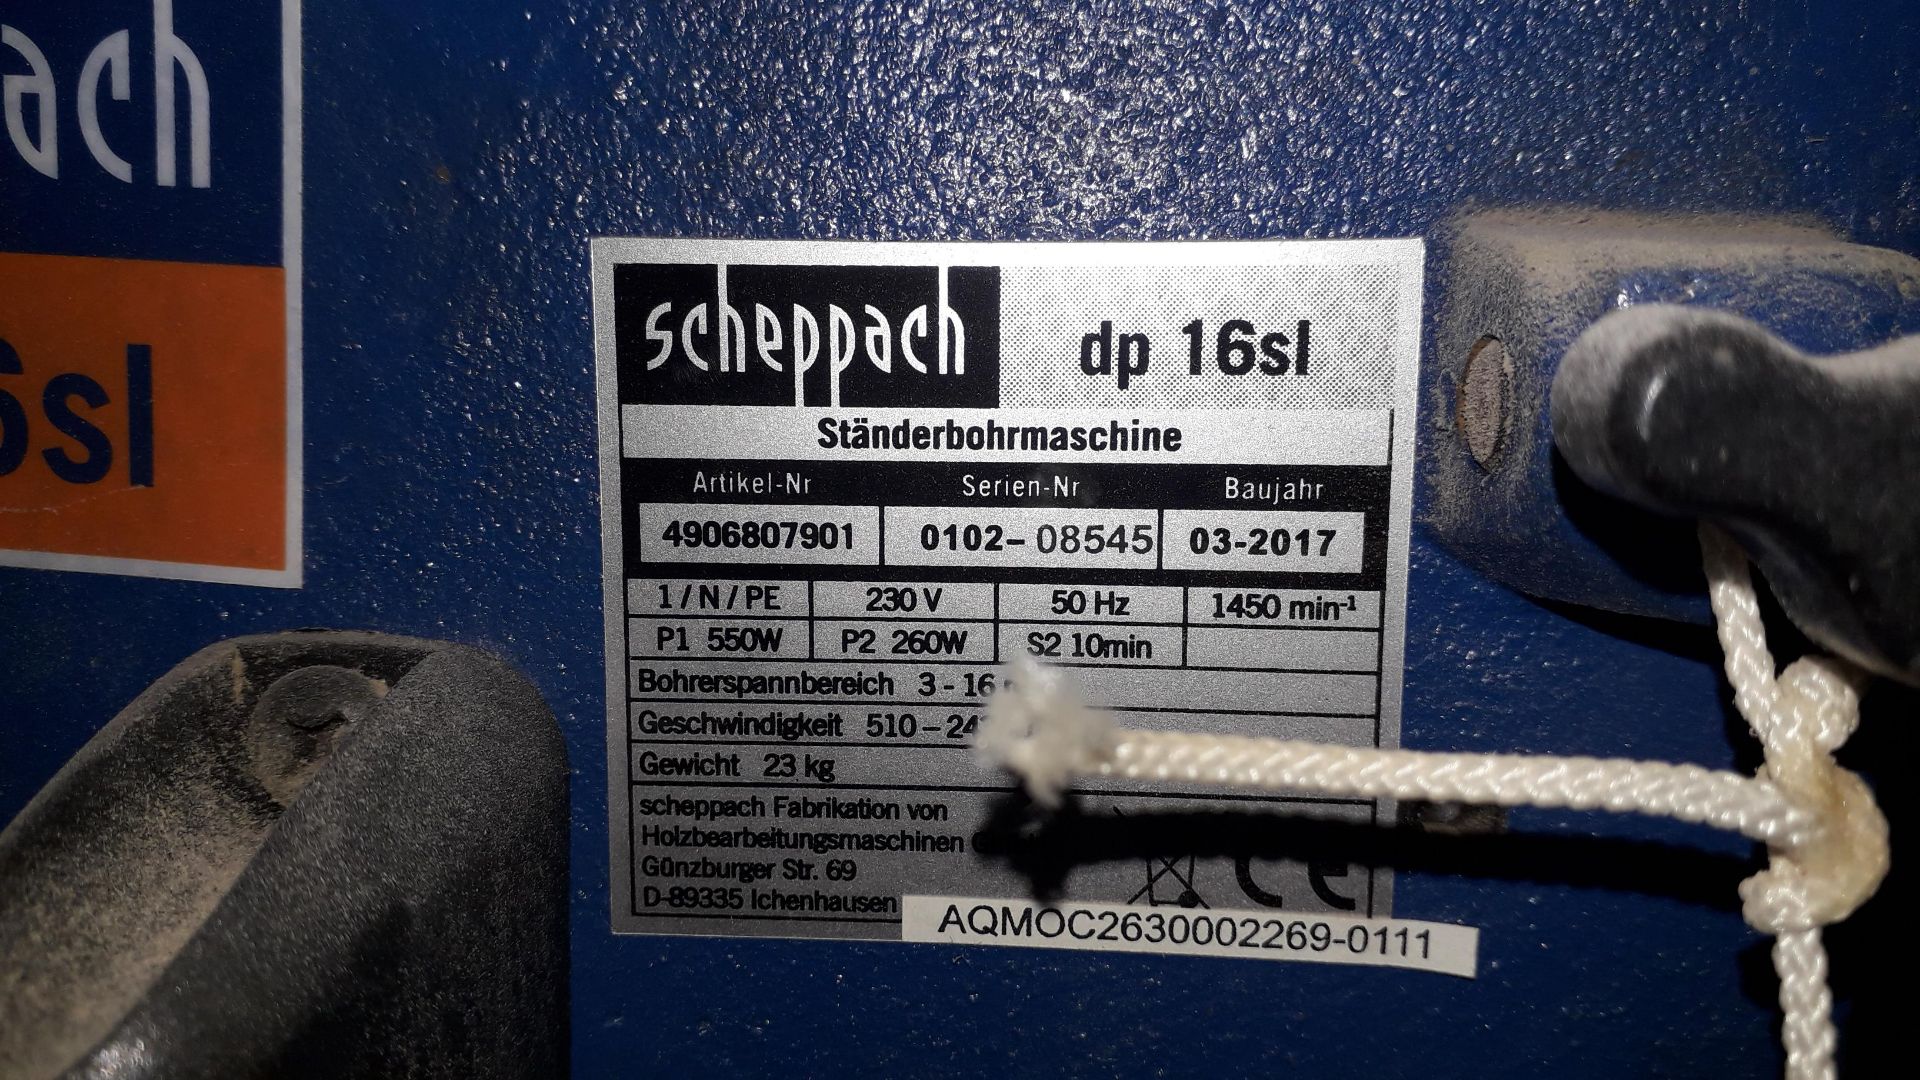 Scheppach DP16SL Bench Pillar Drill, (2017) S/N 0102-08545 240v - Located on 1st Floor - Image 2 of 4